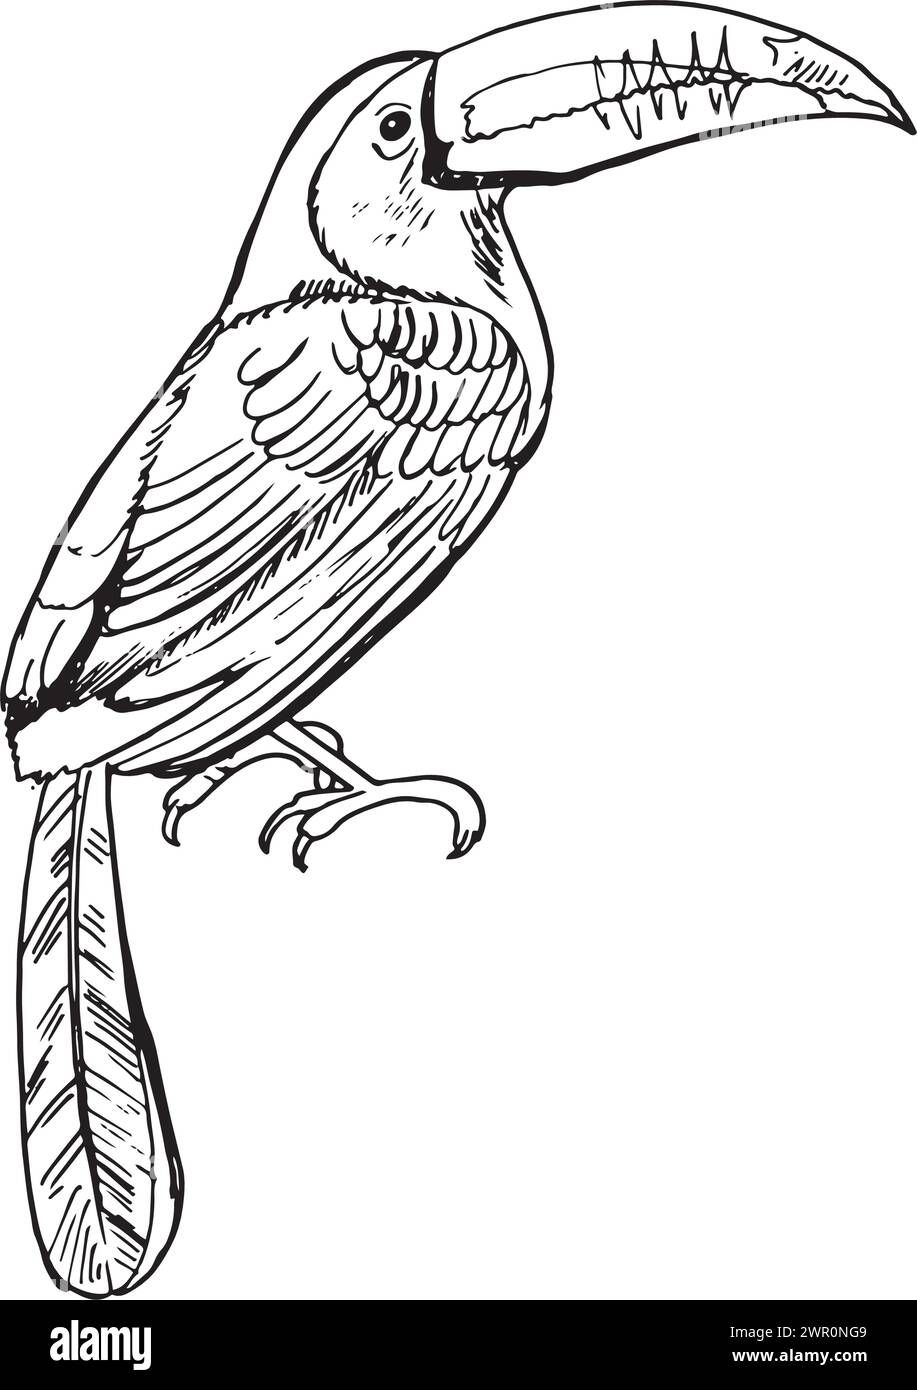 Tukanskizze tropischer Vogel. Amerikanischer Wald toco Tukan Vogel sitzt auf Ast mit. Exotischer wilder Vogel für Desing-Print und Amazonas-Wildtier-Symbol Stock Vektor